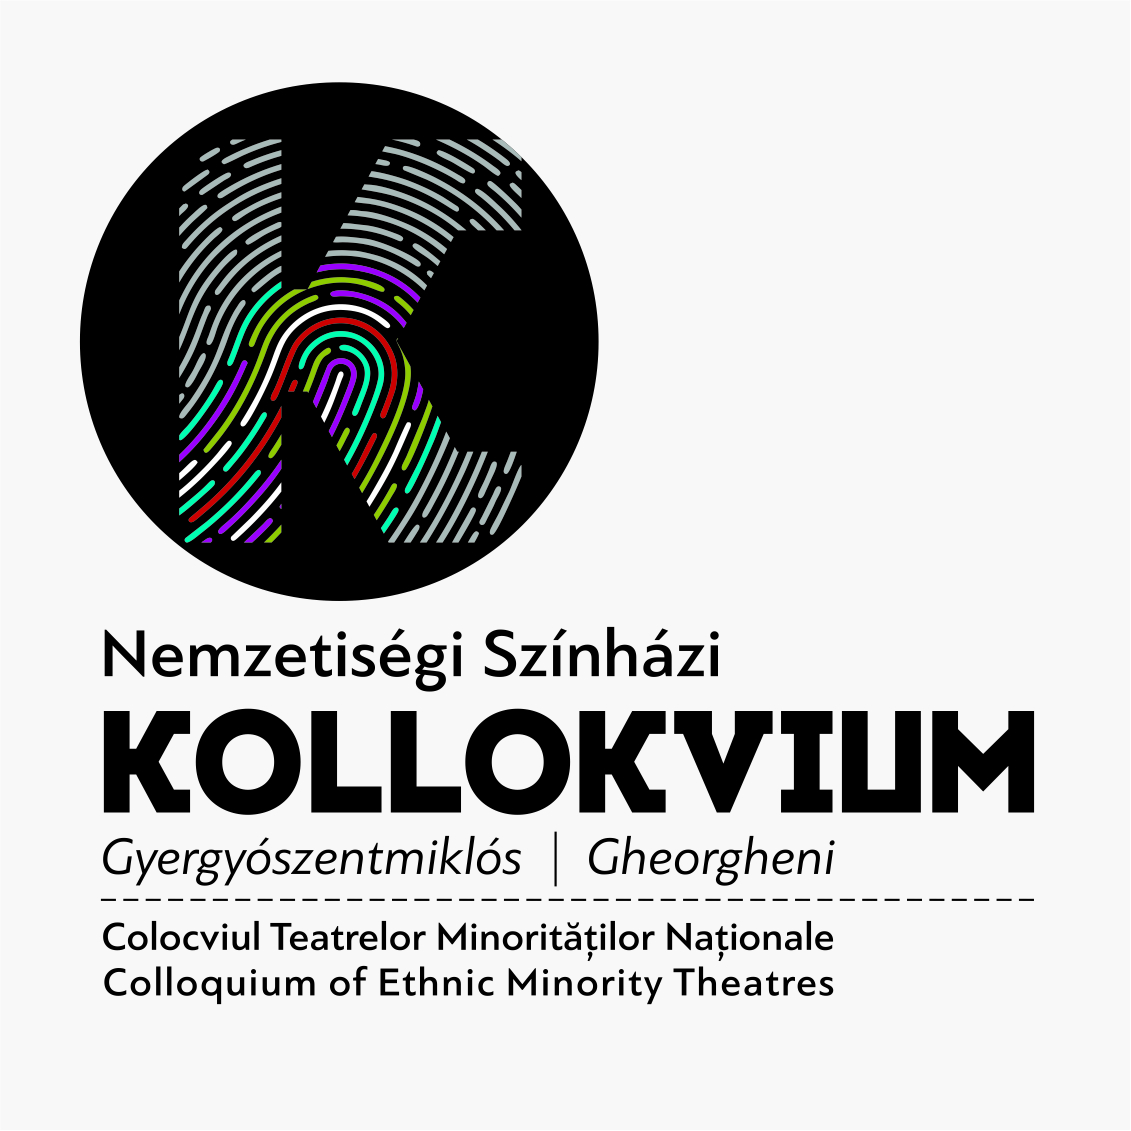 Nemzetiségi Színházi Kollokvium